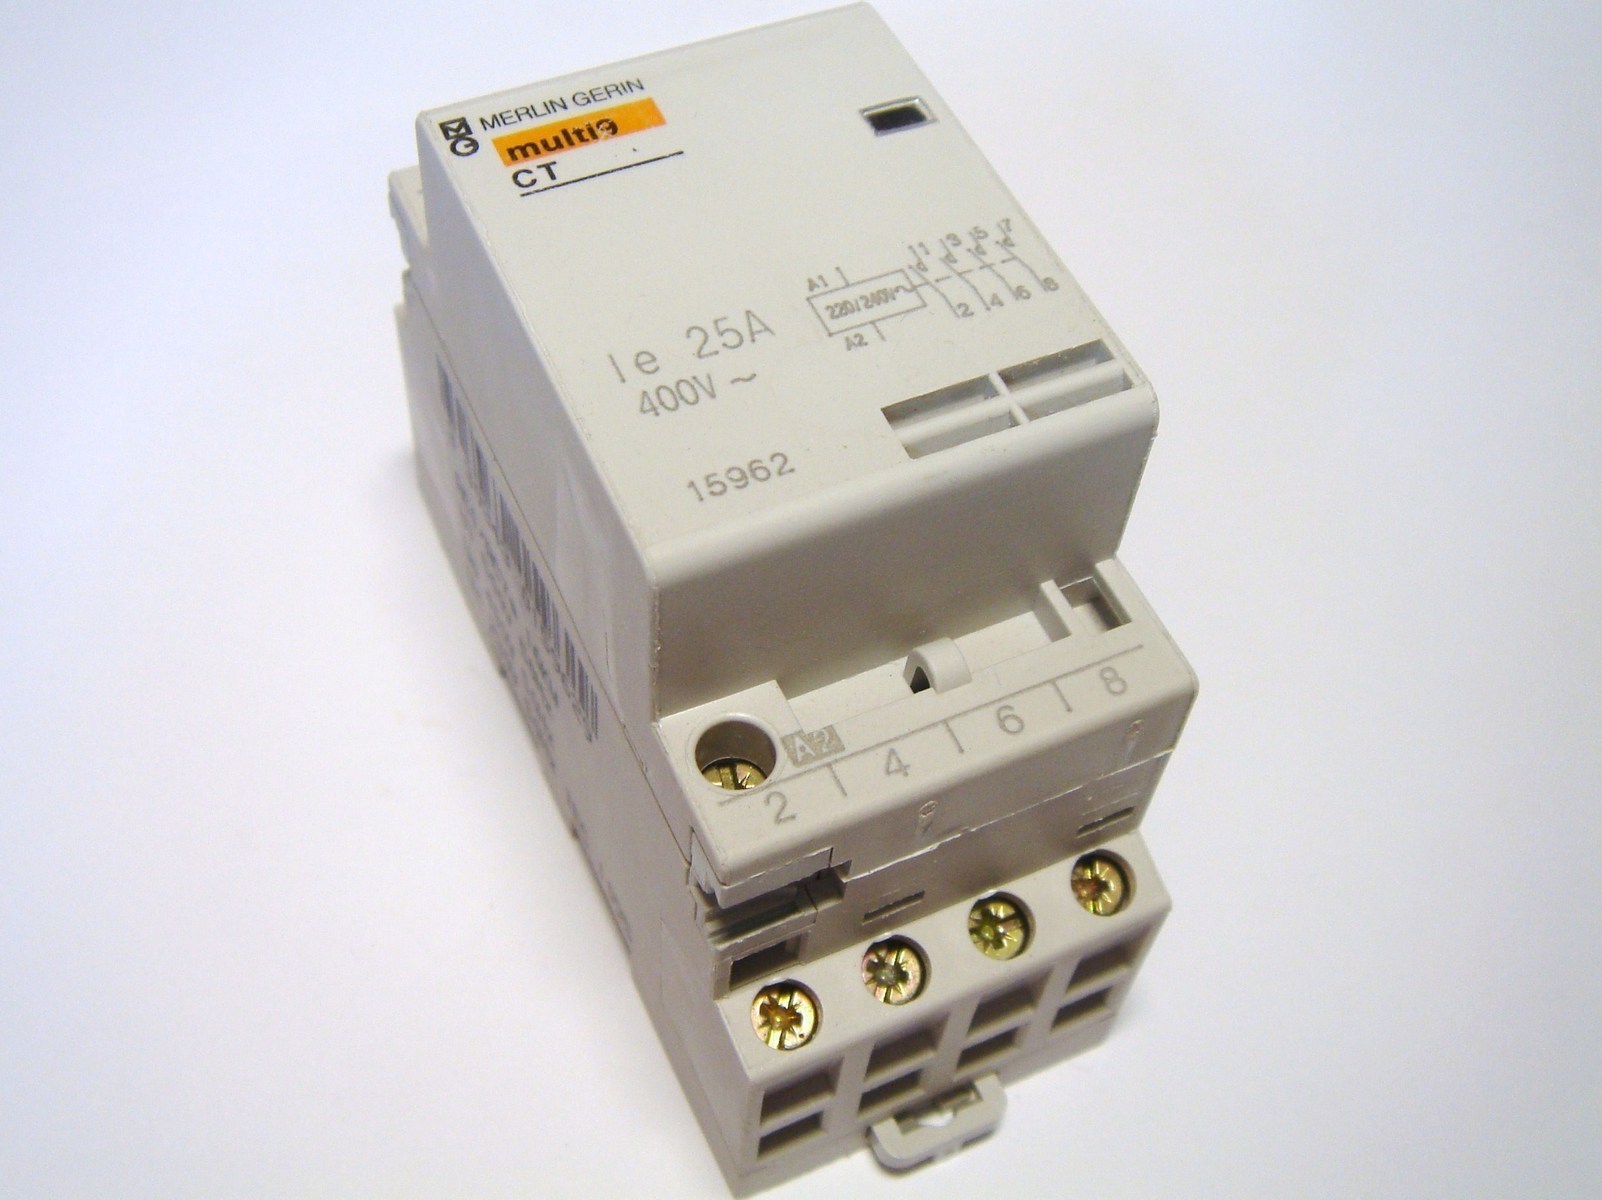 Модульный контактор 3-фазный 25A(17кВт) - 8€, CT, Merlin Gerin, multi 9 .